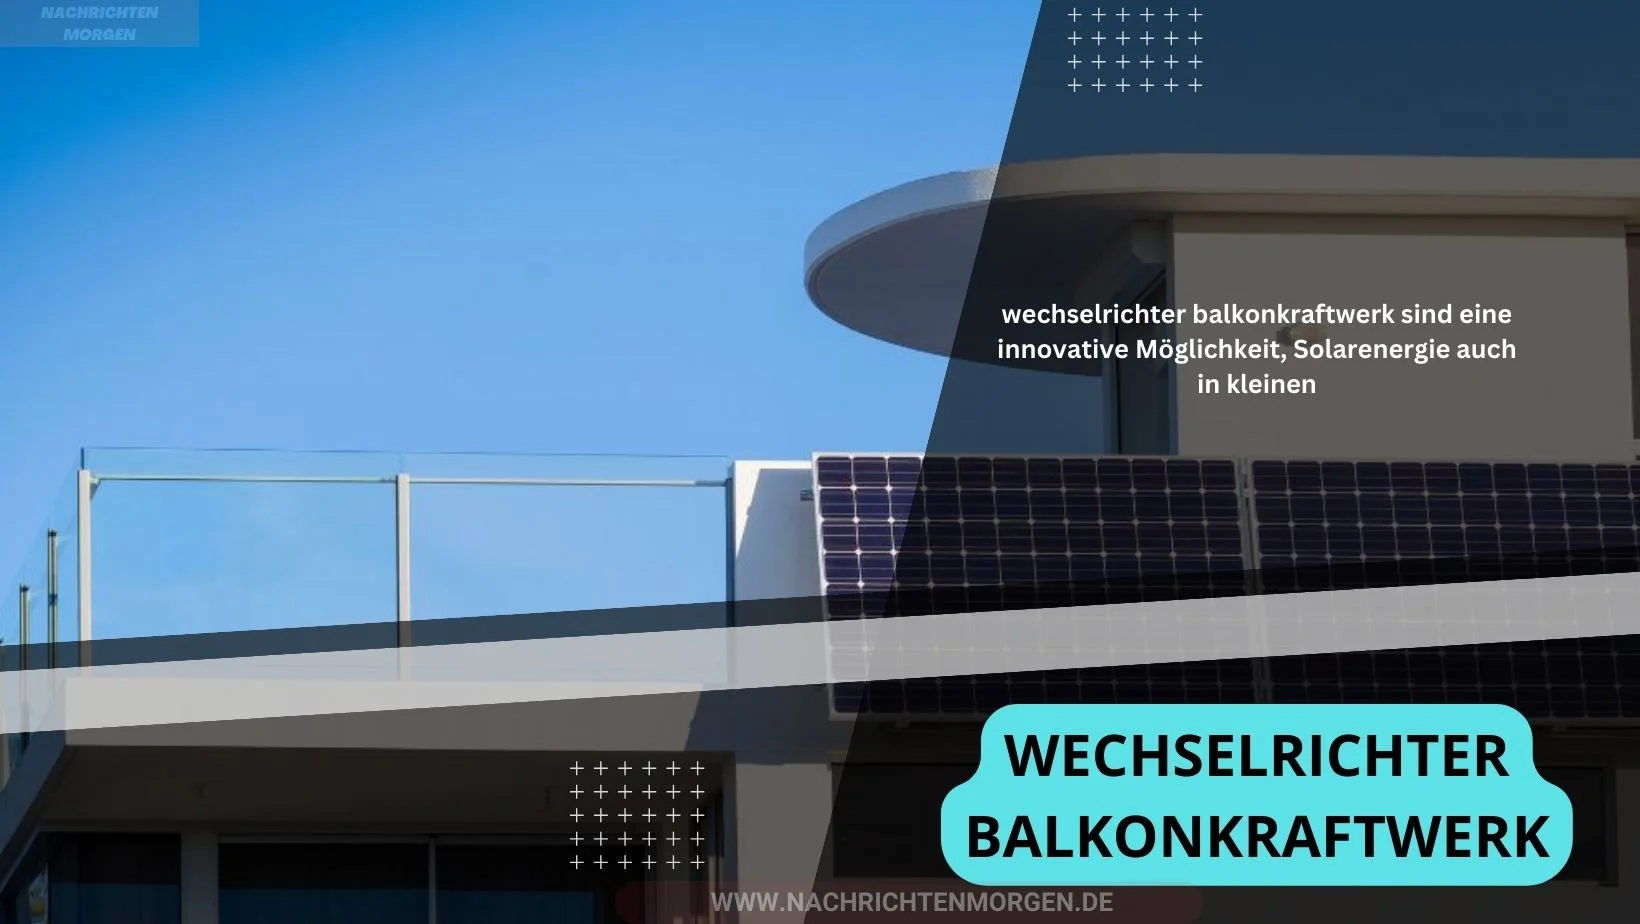 wechselrichter balkonkraftwerk